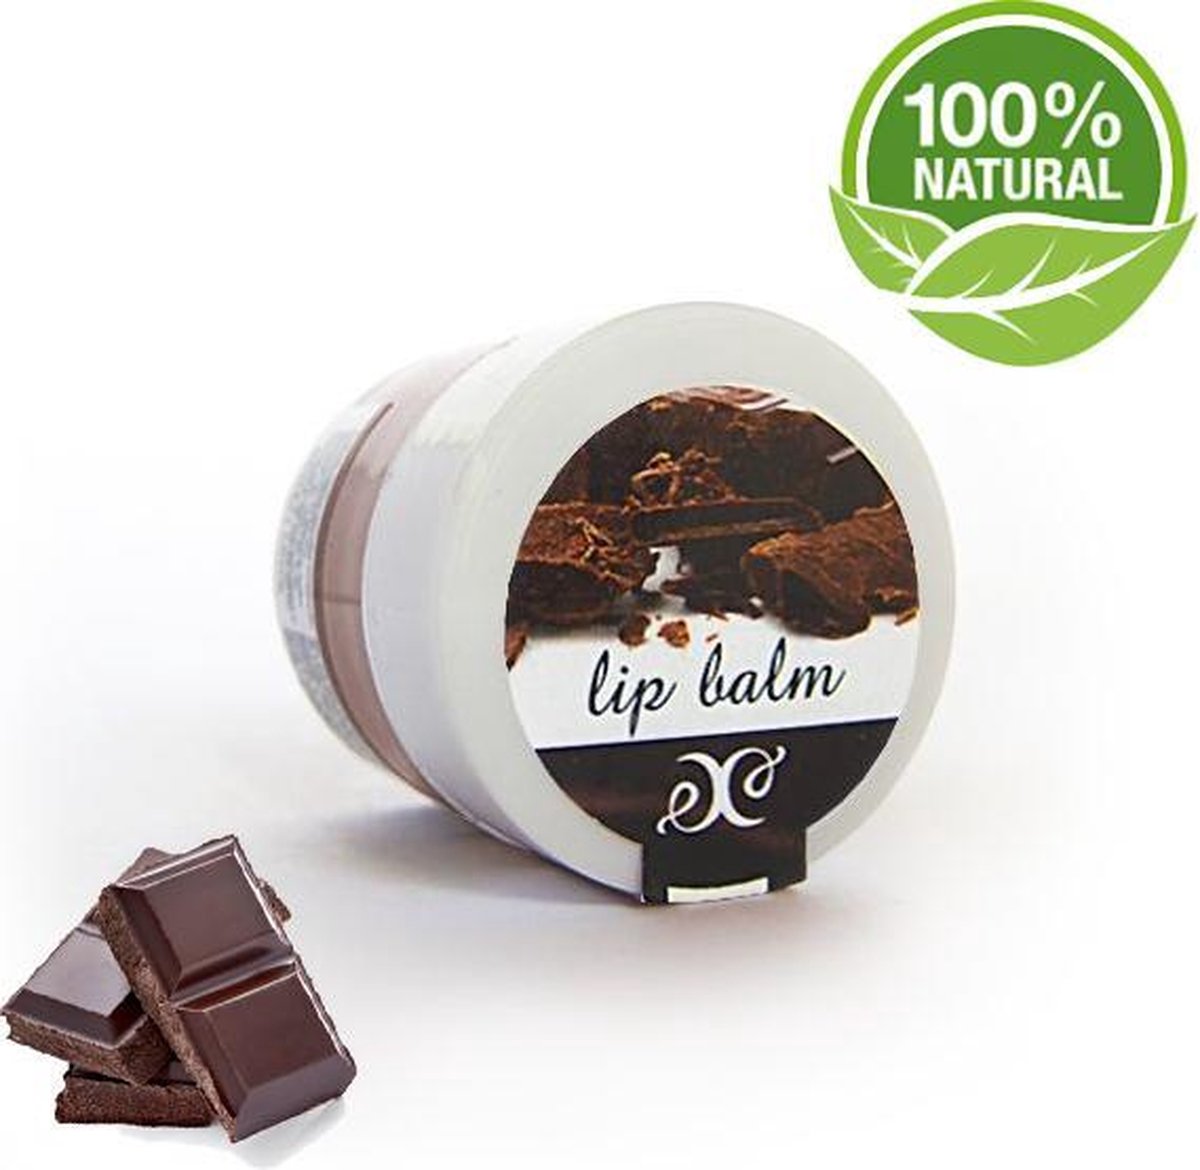 Lippenbalsem Chocolade 30 ml, Herstelt, Hydrateert En Voedt •100% Natuurlijk & Gecertificeerd•